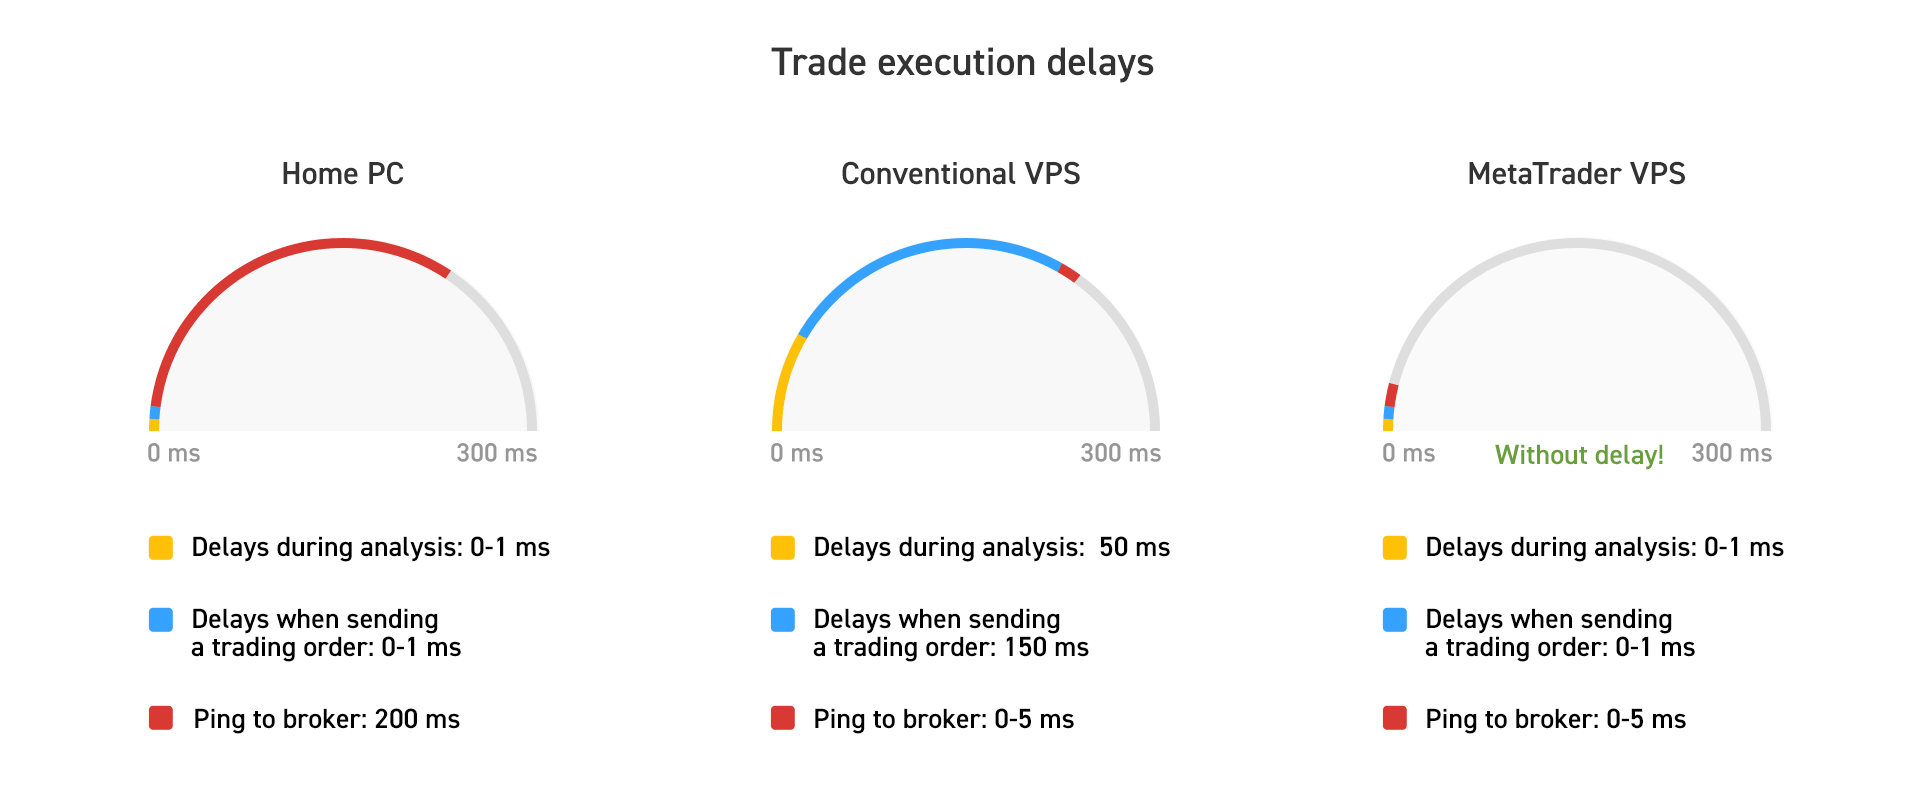 Trade execution delays